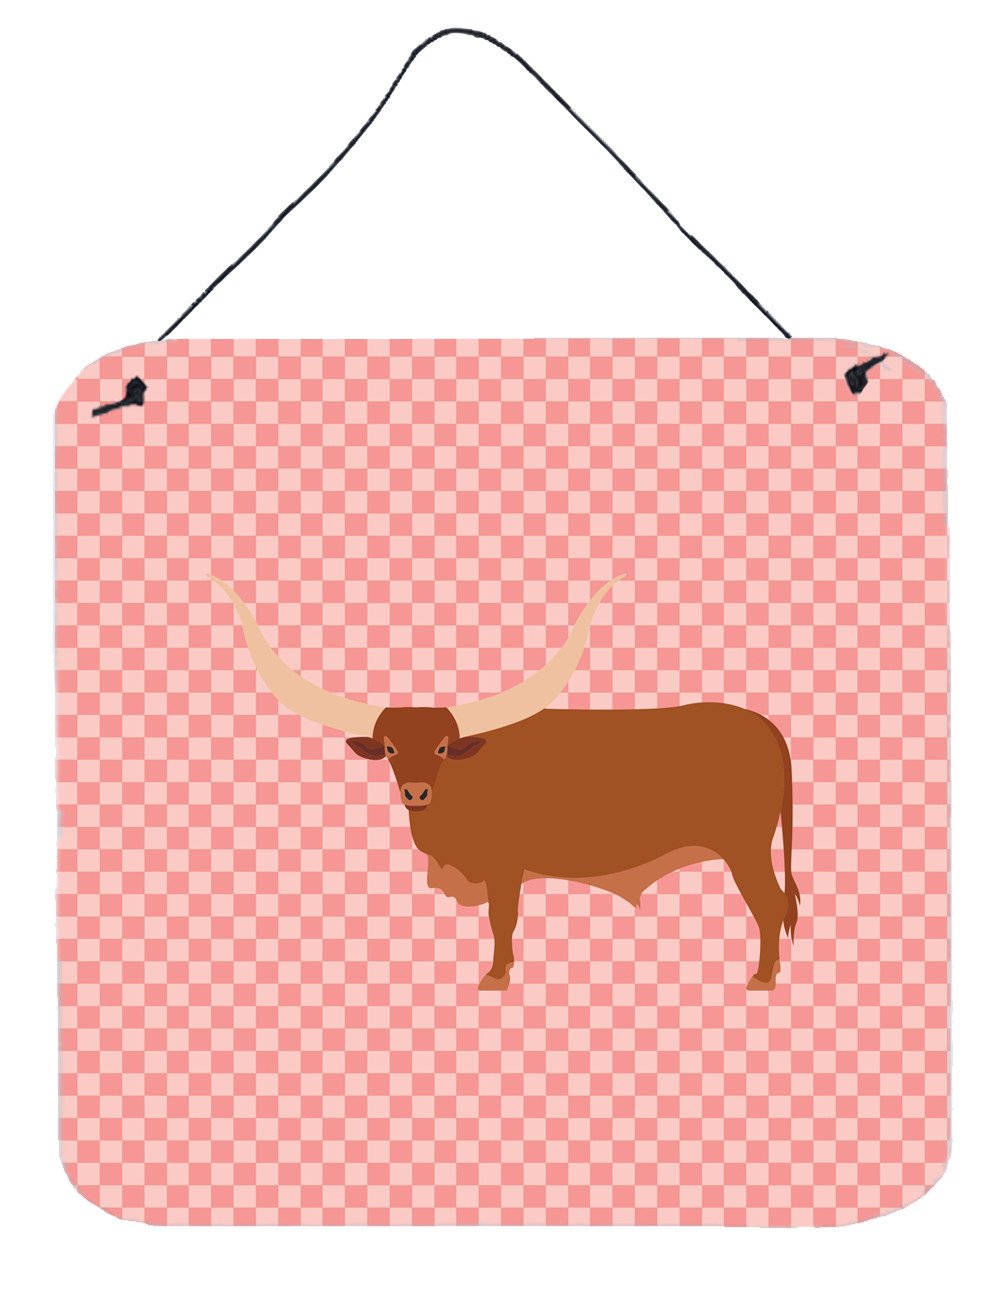 Ankole-Watusu Cow Pink Check Wall or Door Hanging Prints BB7823DS66 by Caroline's Treasures